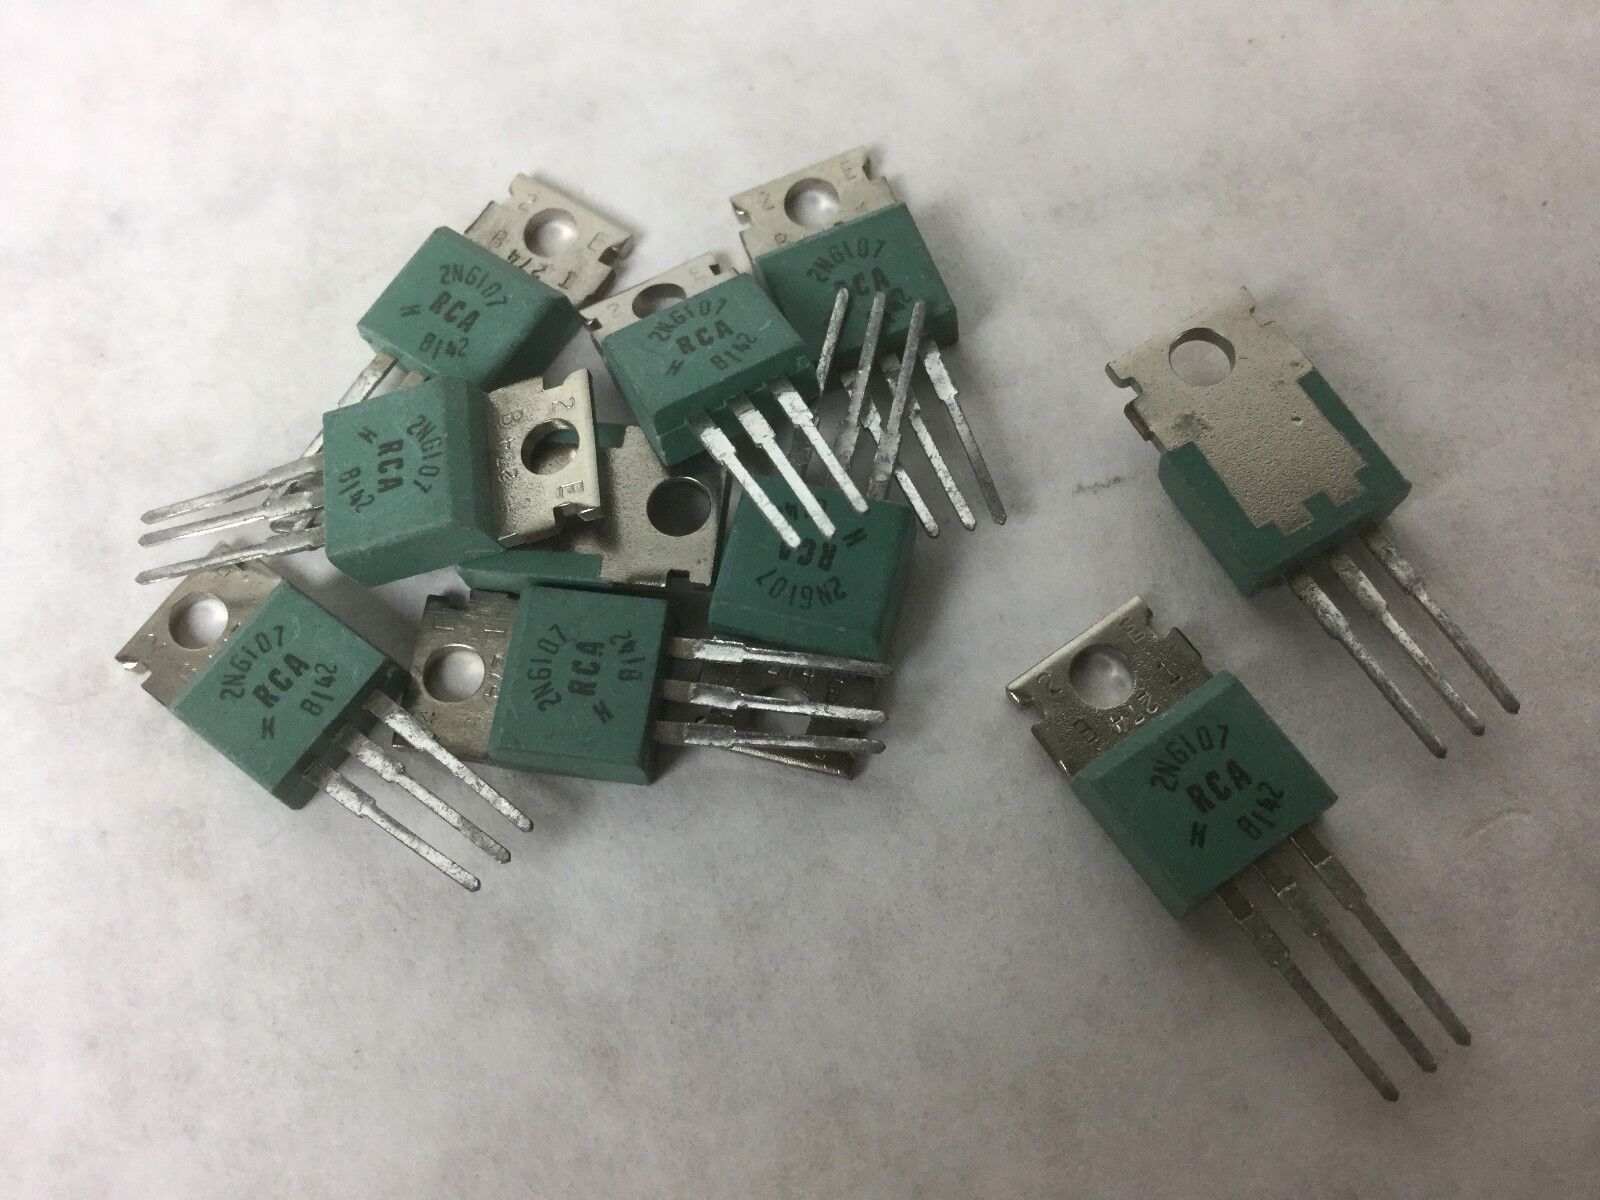 RCA 2NG107 Transistor, Lot of 10, NEW